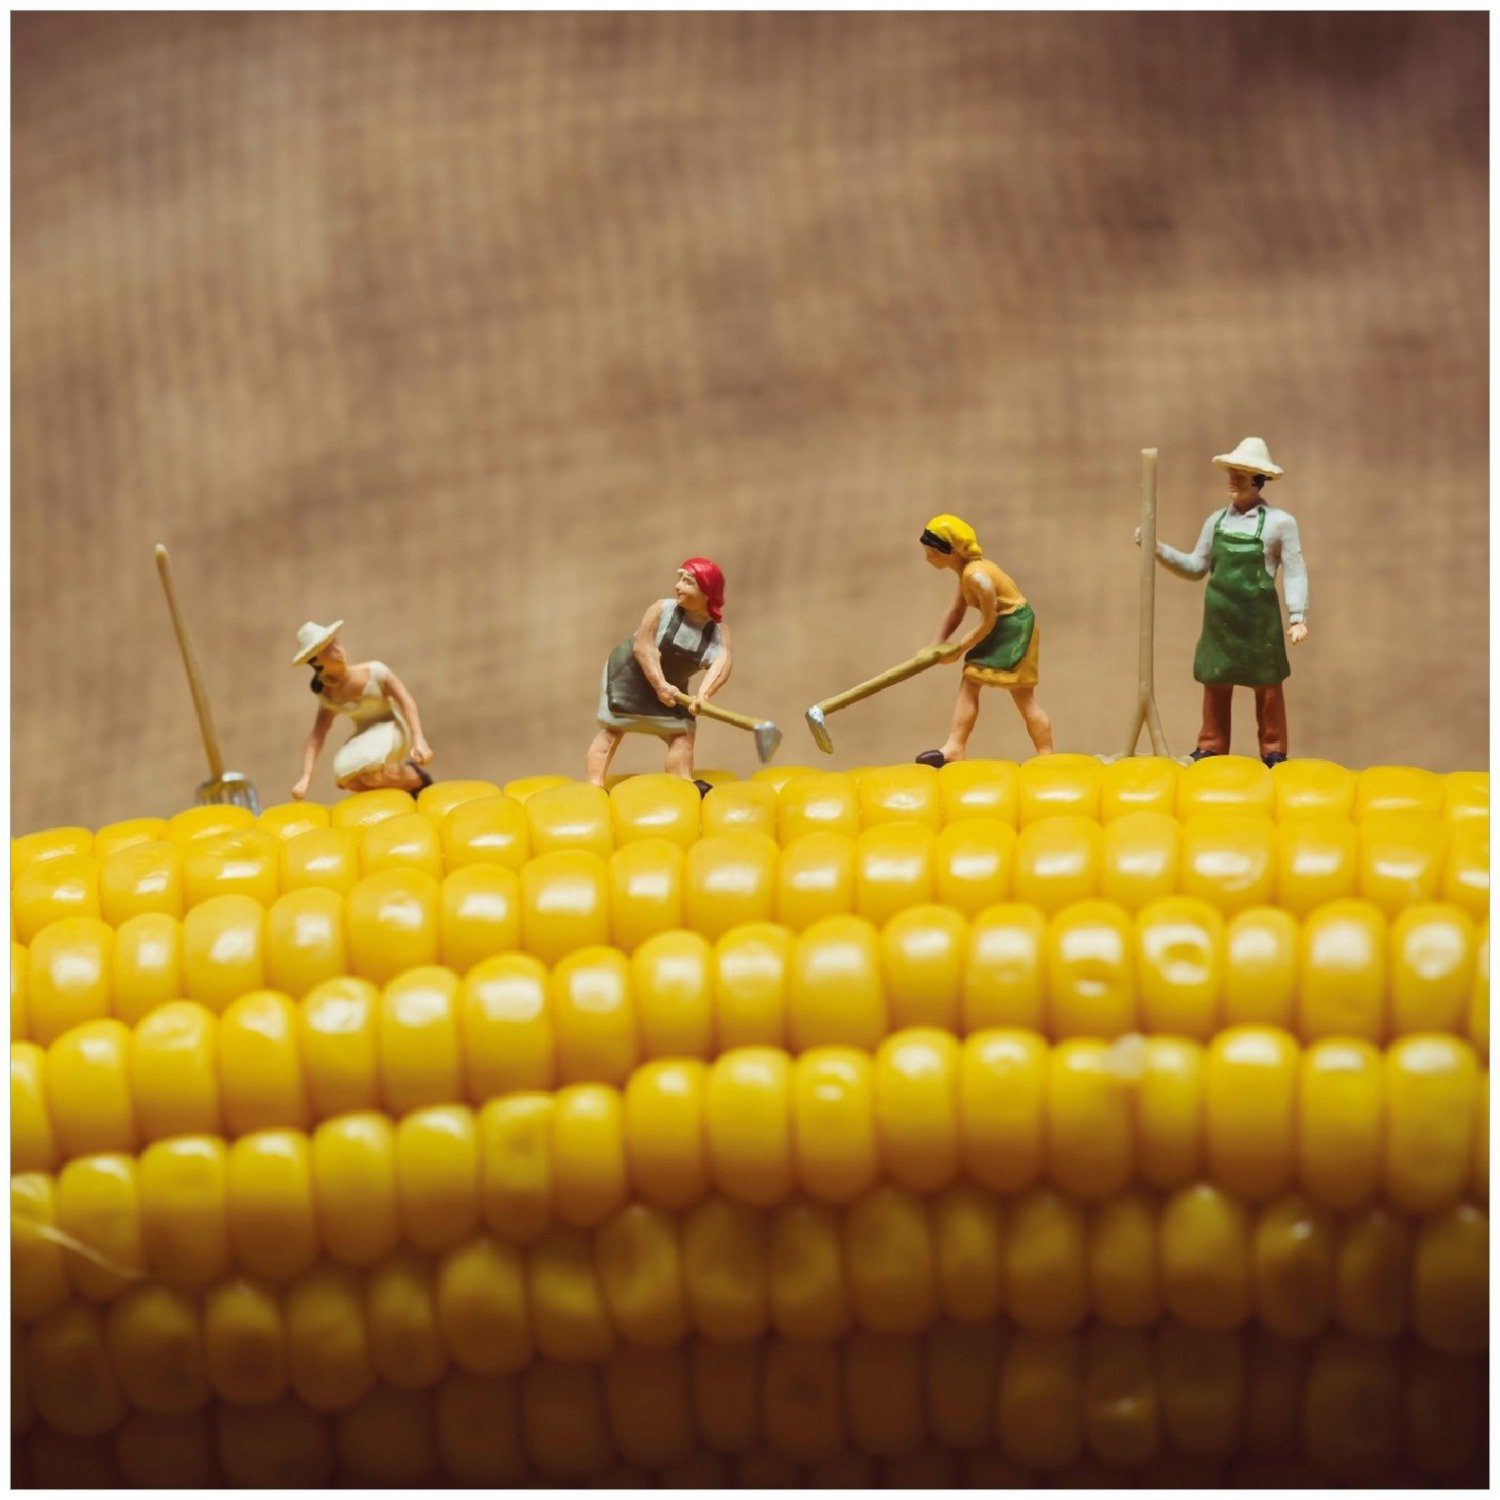 einem Memoboard Lustige Wallario Bauernfiguren Maiskolben auf Arbeiten beim